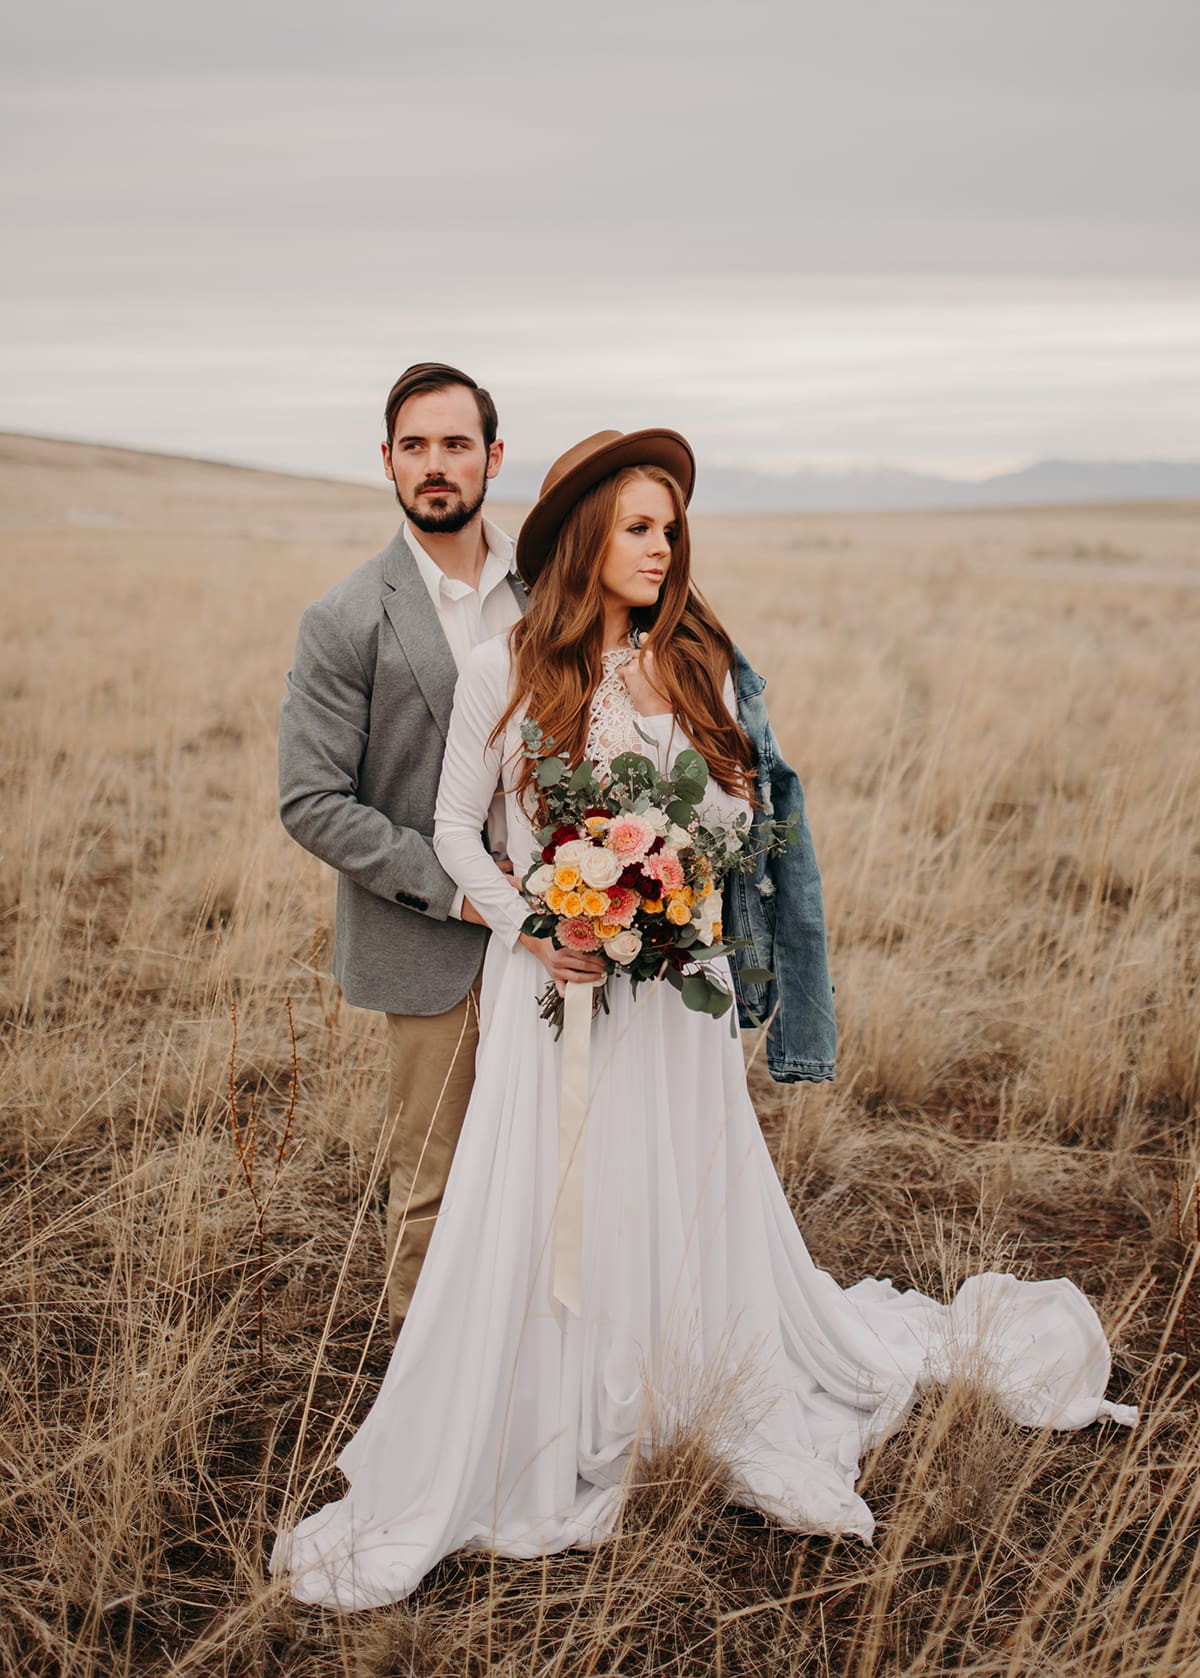 Tip of the Hat – Utah Valley Bride